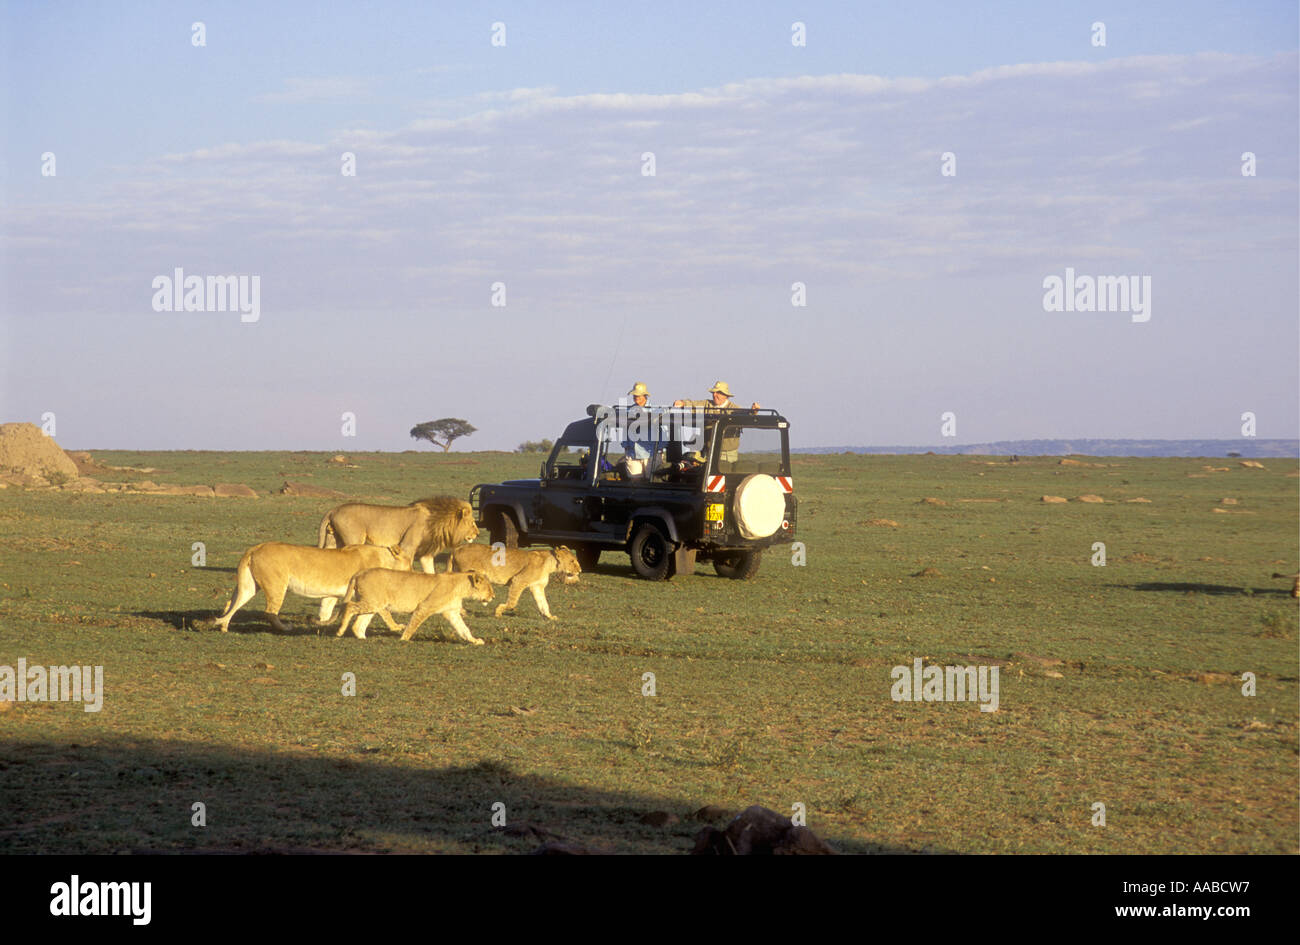 Ouvrez surmontée LandRover à proximité de lions de la réserve nationale de Masai Mara au Kenya Afrique de l'Est Banque D'Images